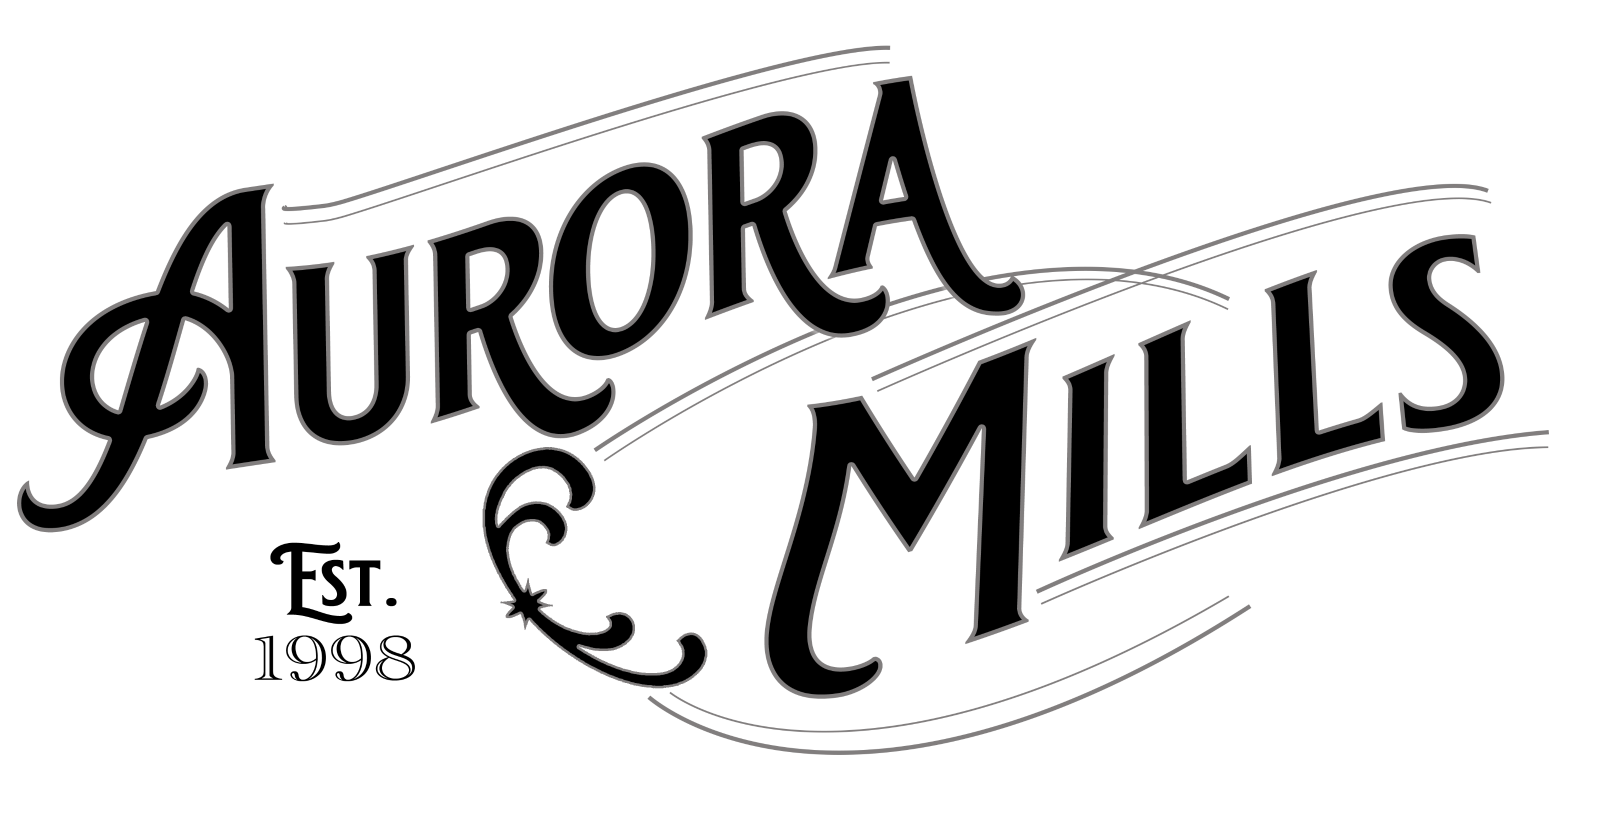 Logo for Aurora Mills, reads: "Aurora Mills. EST 1998"